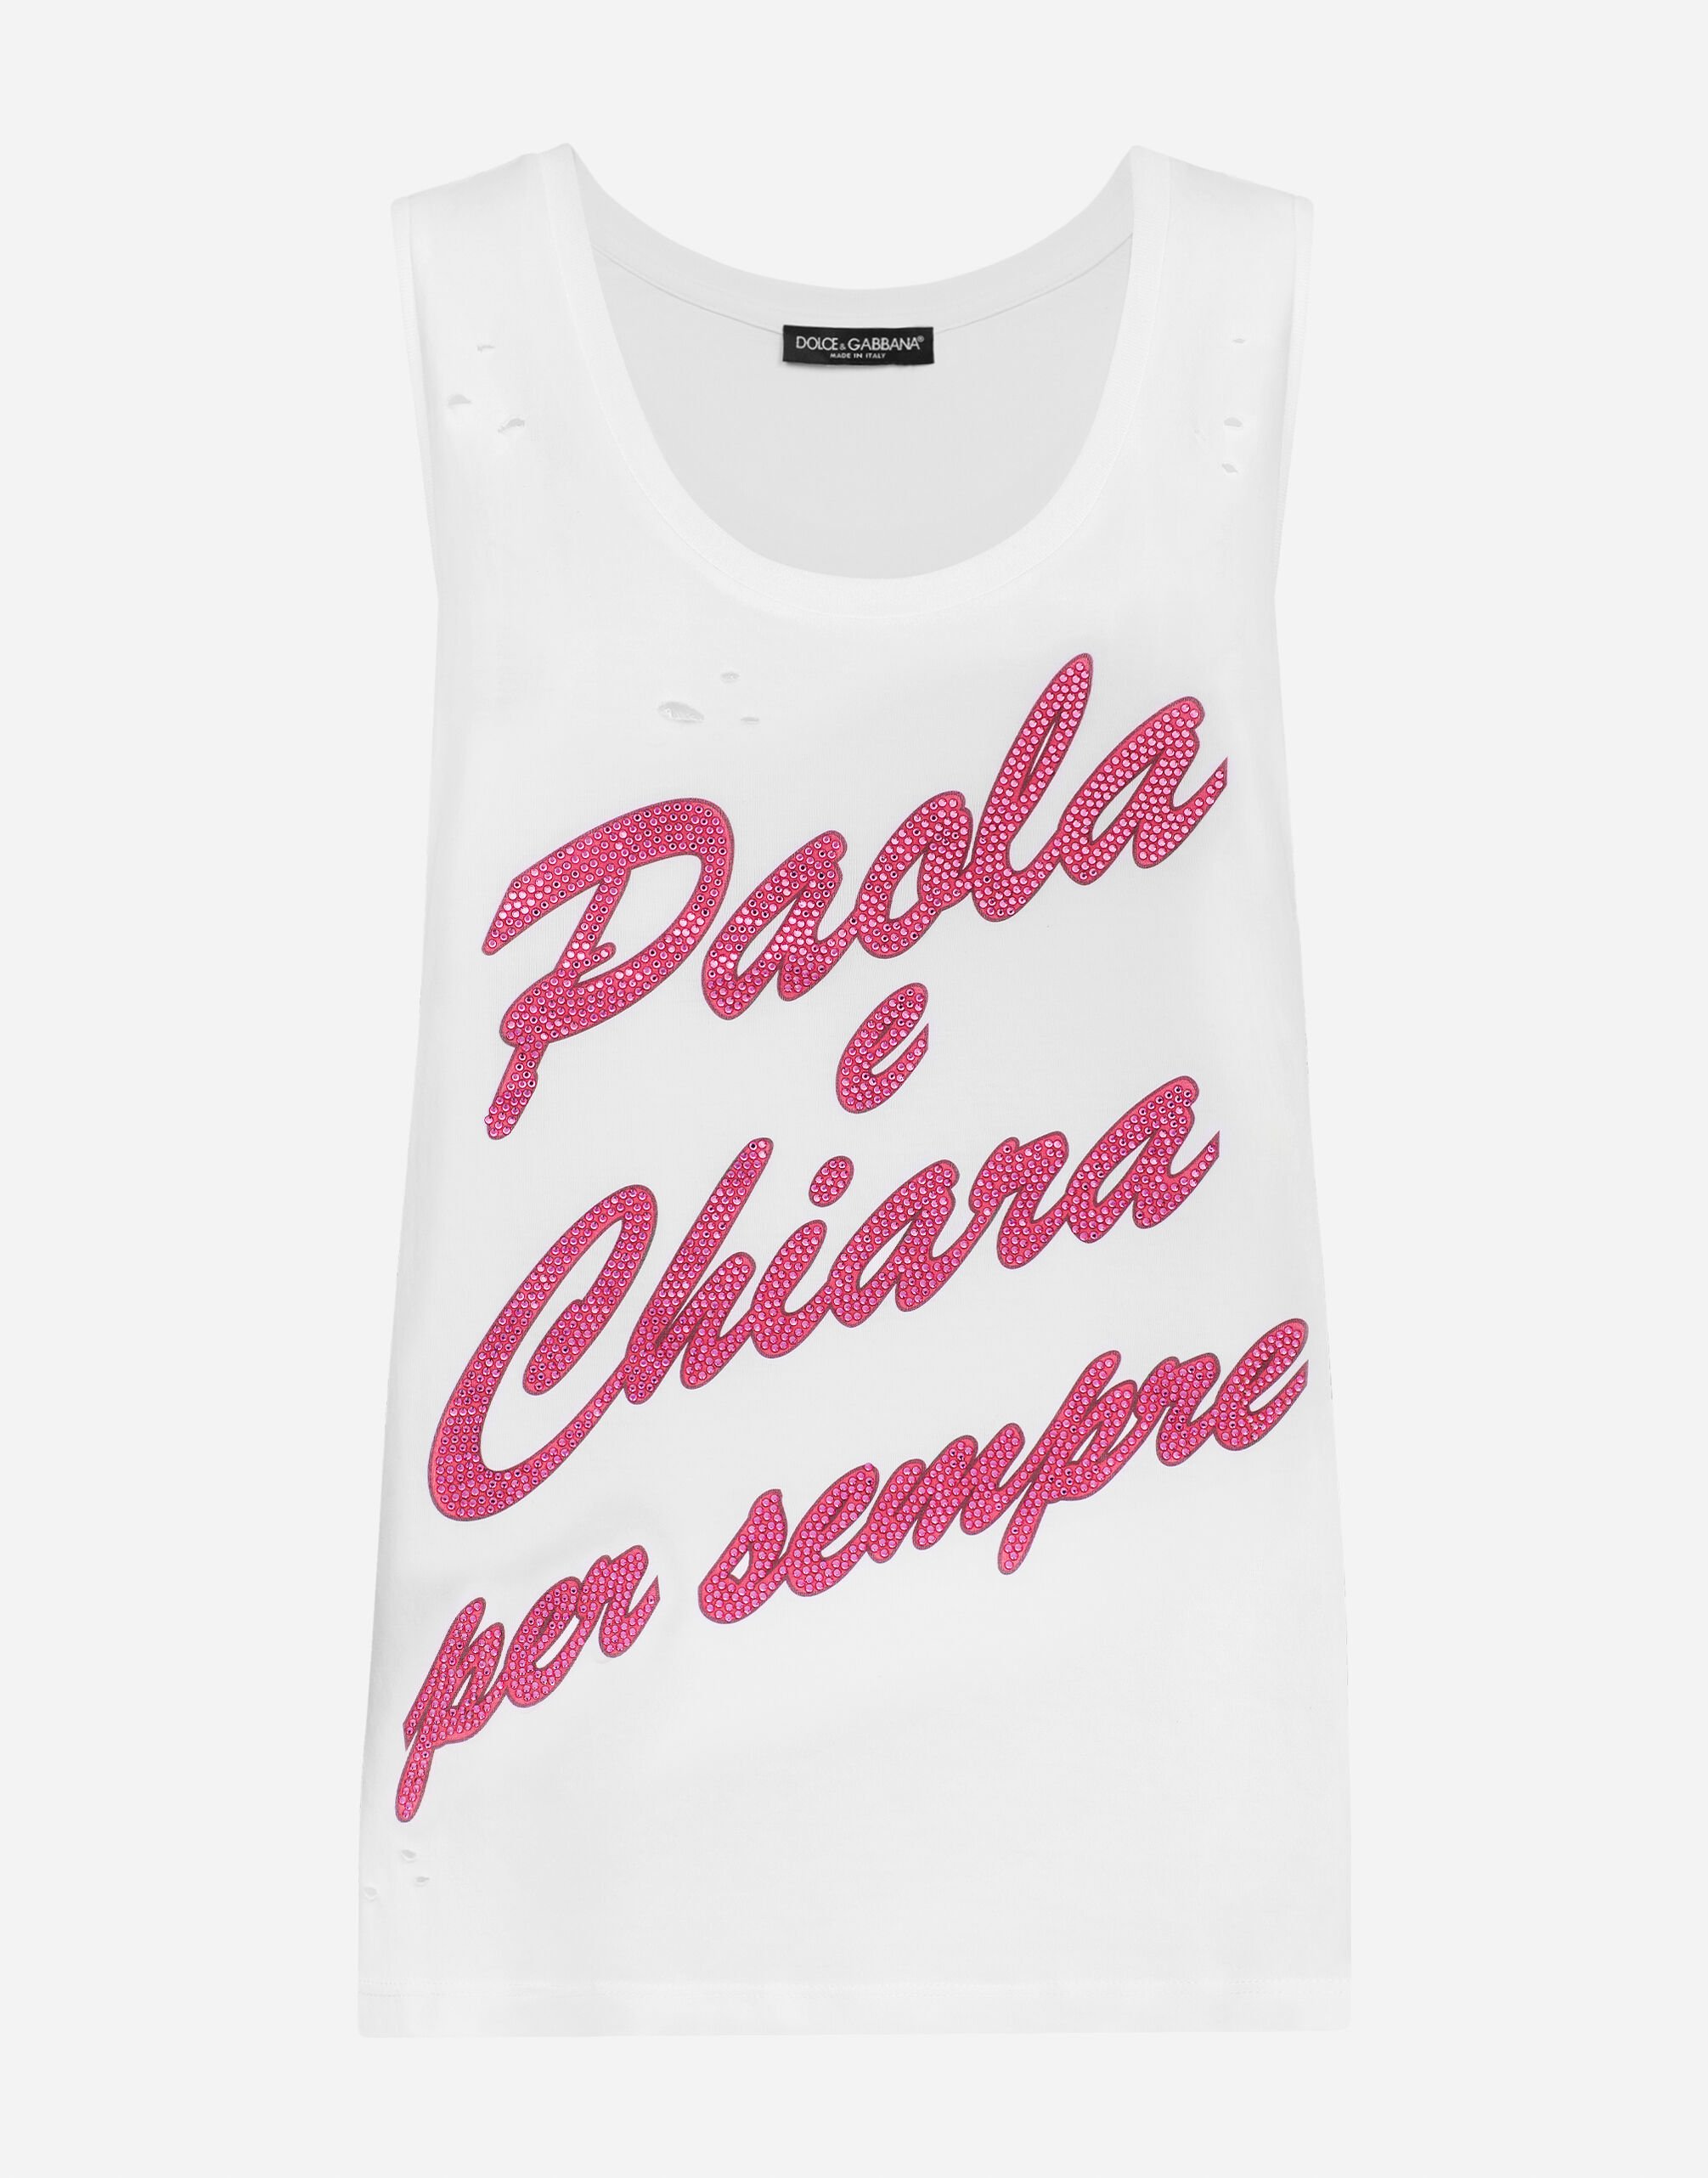 Dolce&Gabbana "Paola e Chiara per sempre" tank top White I8AOHMG7K9Z